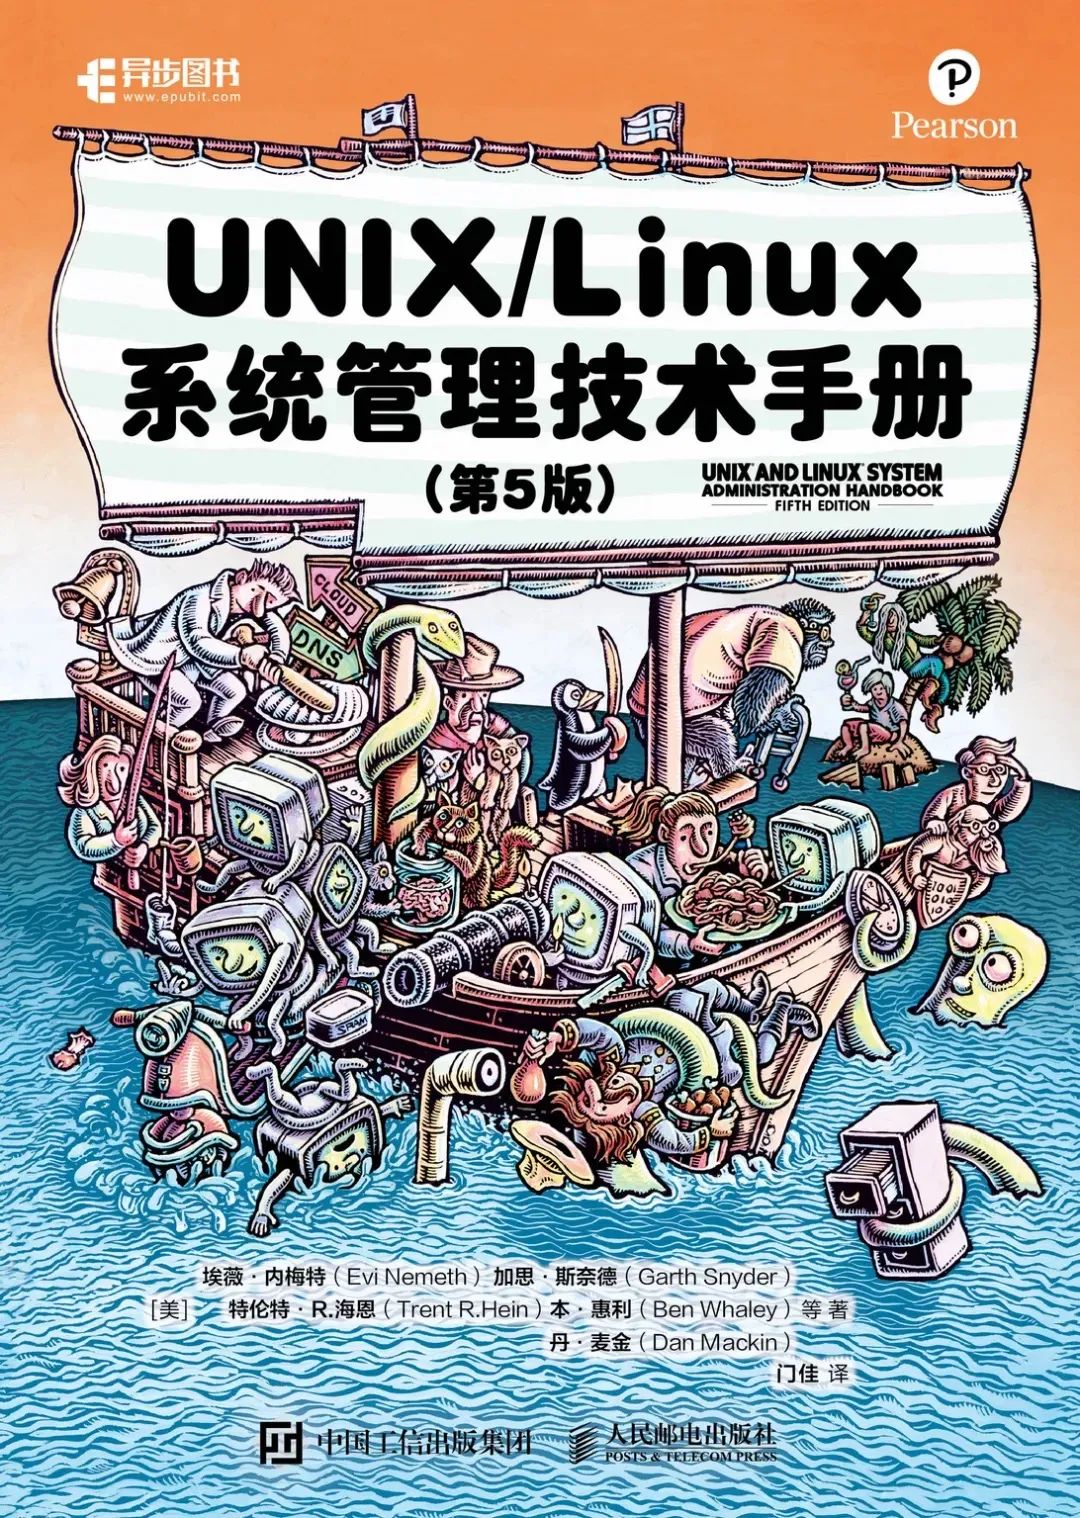 懒惰使人进步，UNIX 和 Linux 新系统的诞生只是意外